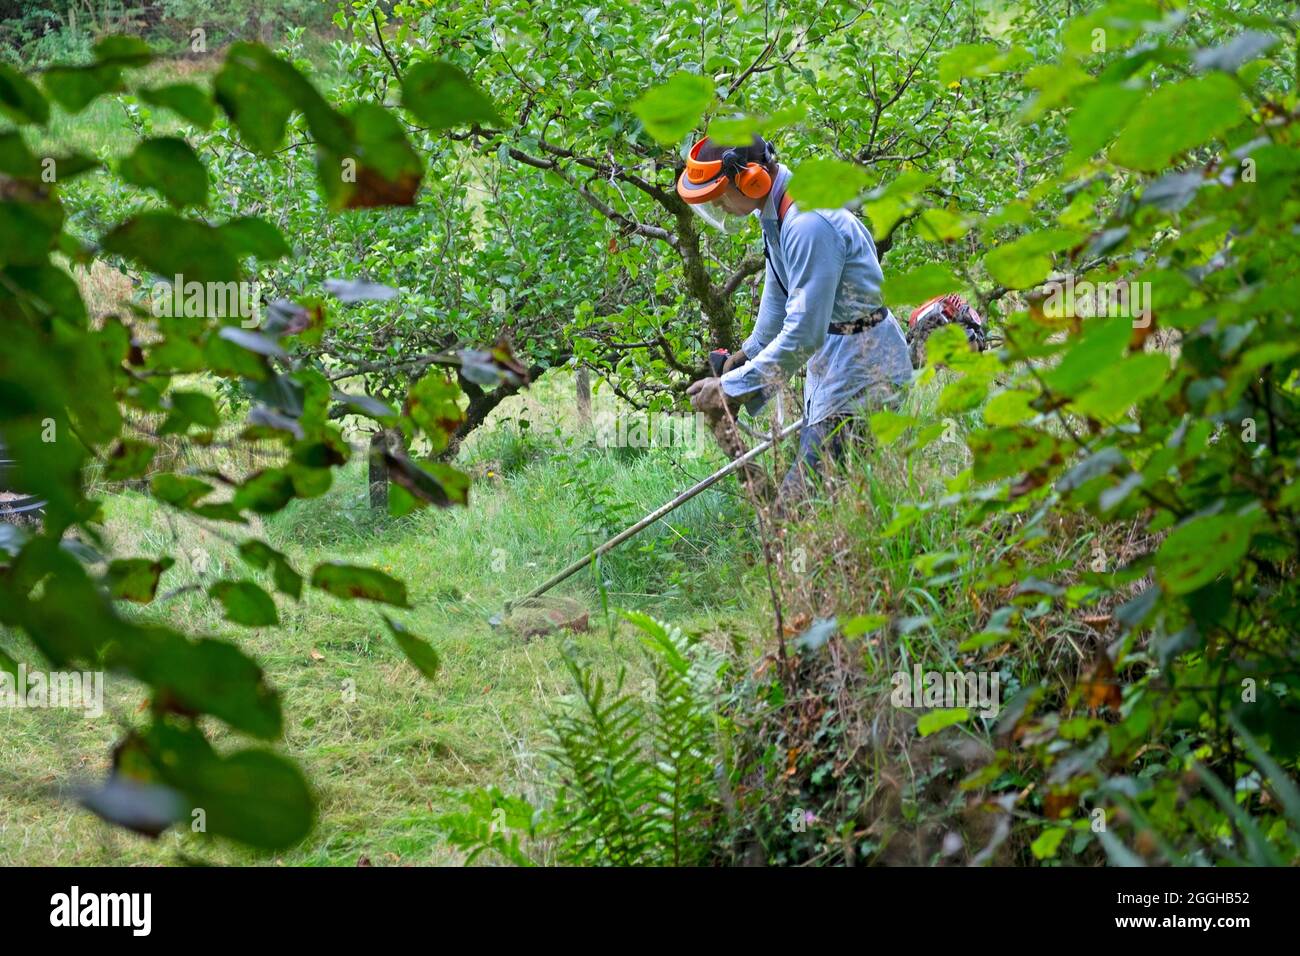 Homme asiatique portant un masque de sécurité utilisant un strimer pour tondre faucher de longues prairies d'herbe autour des pommiers dans le verger d'été août 2021 pays de Galles Royaume-Uni KATHY DEWITT Banque D'Images